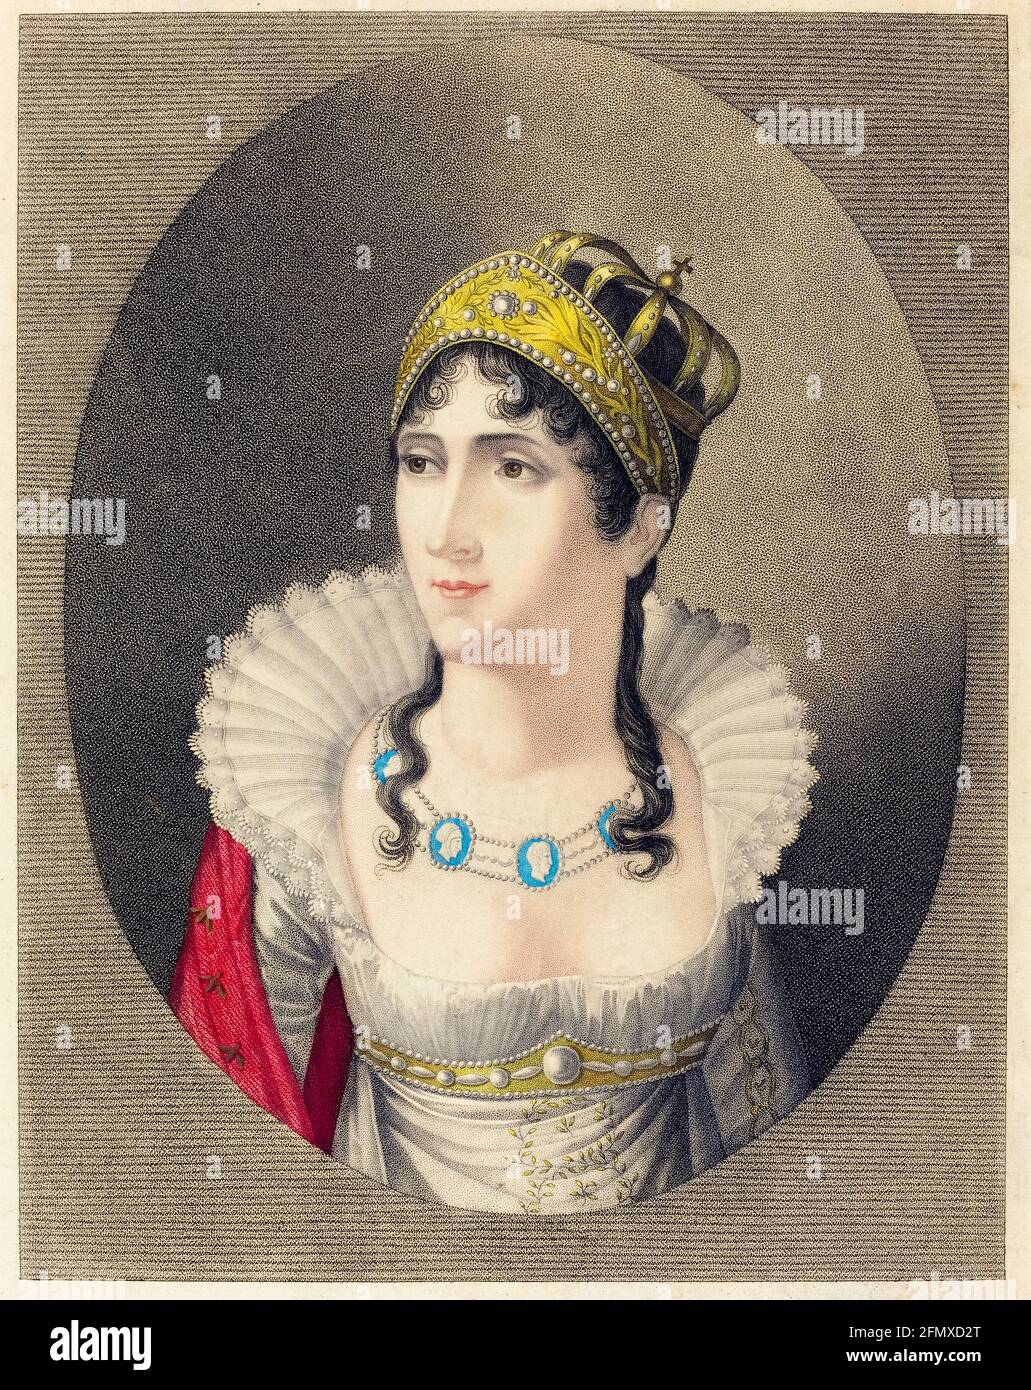 Joséphine Bonaparte (1763-1814), Empress Consort of France (1804-1810), portrait engraving by Henry Buquet, 1780-1799 Stock Photo